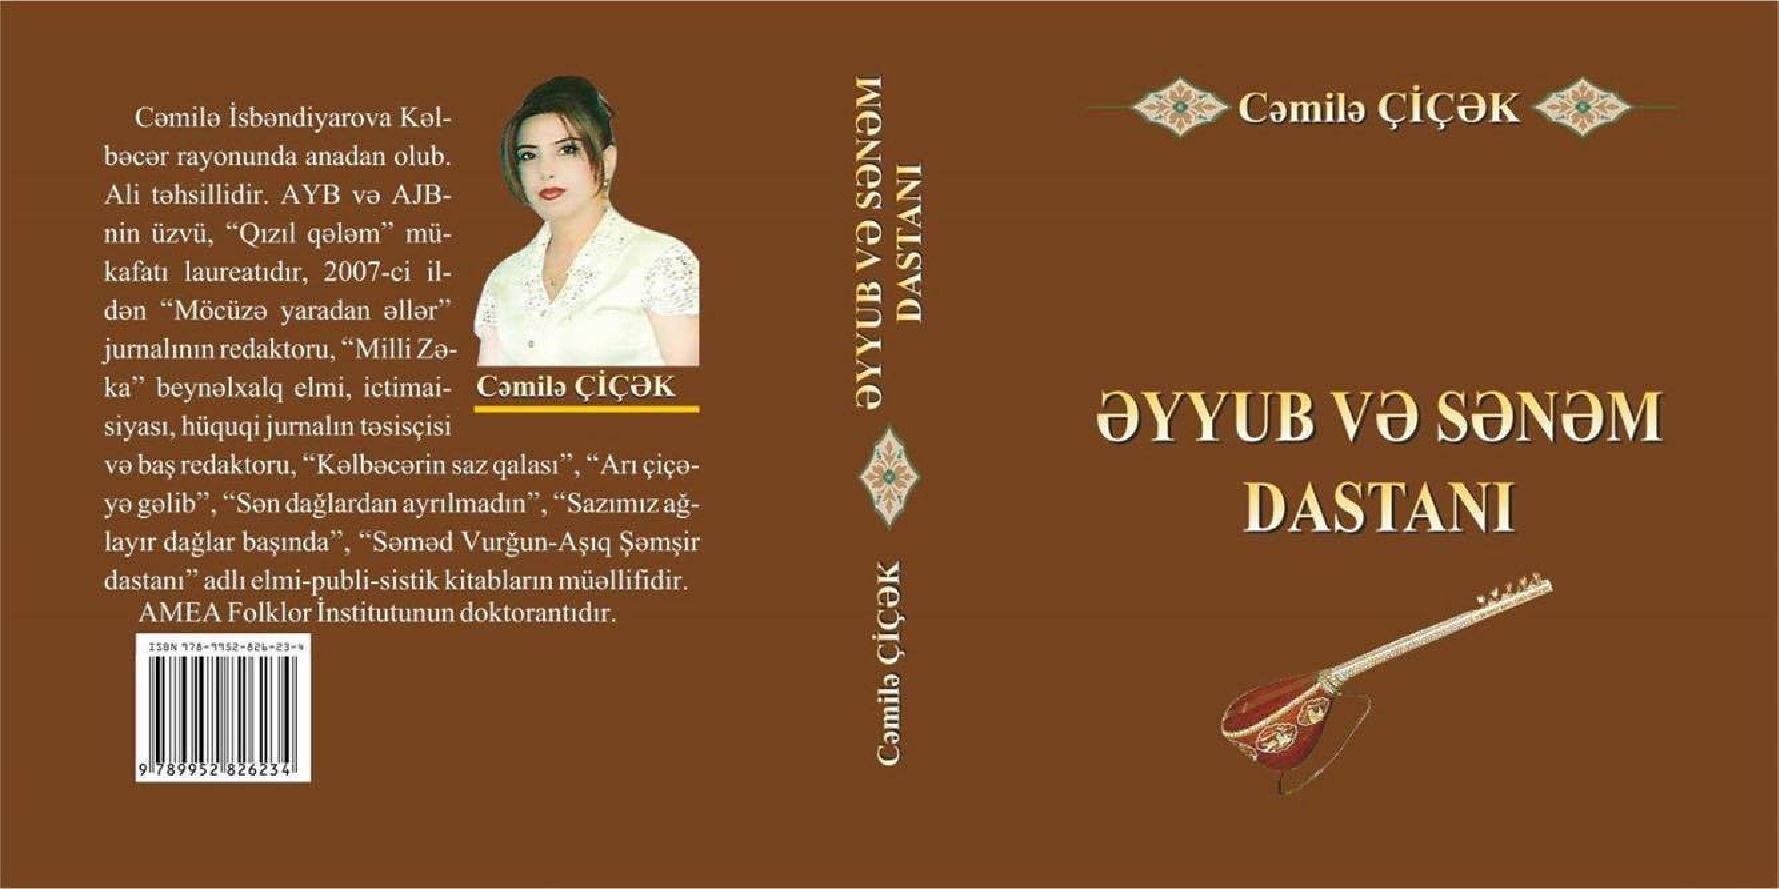 Eyyub Ve Senem Destani-Cemile Çiçek-Baki-2018-169s